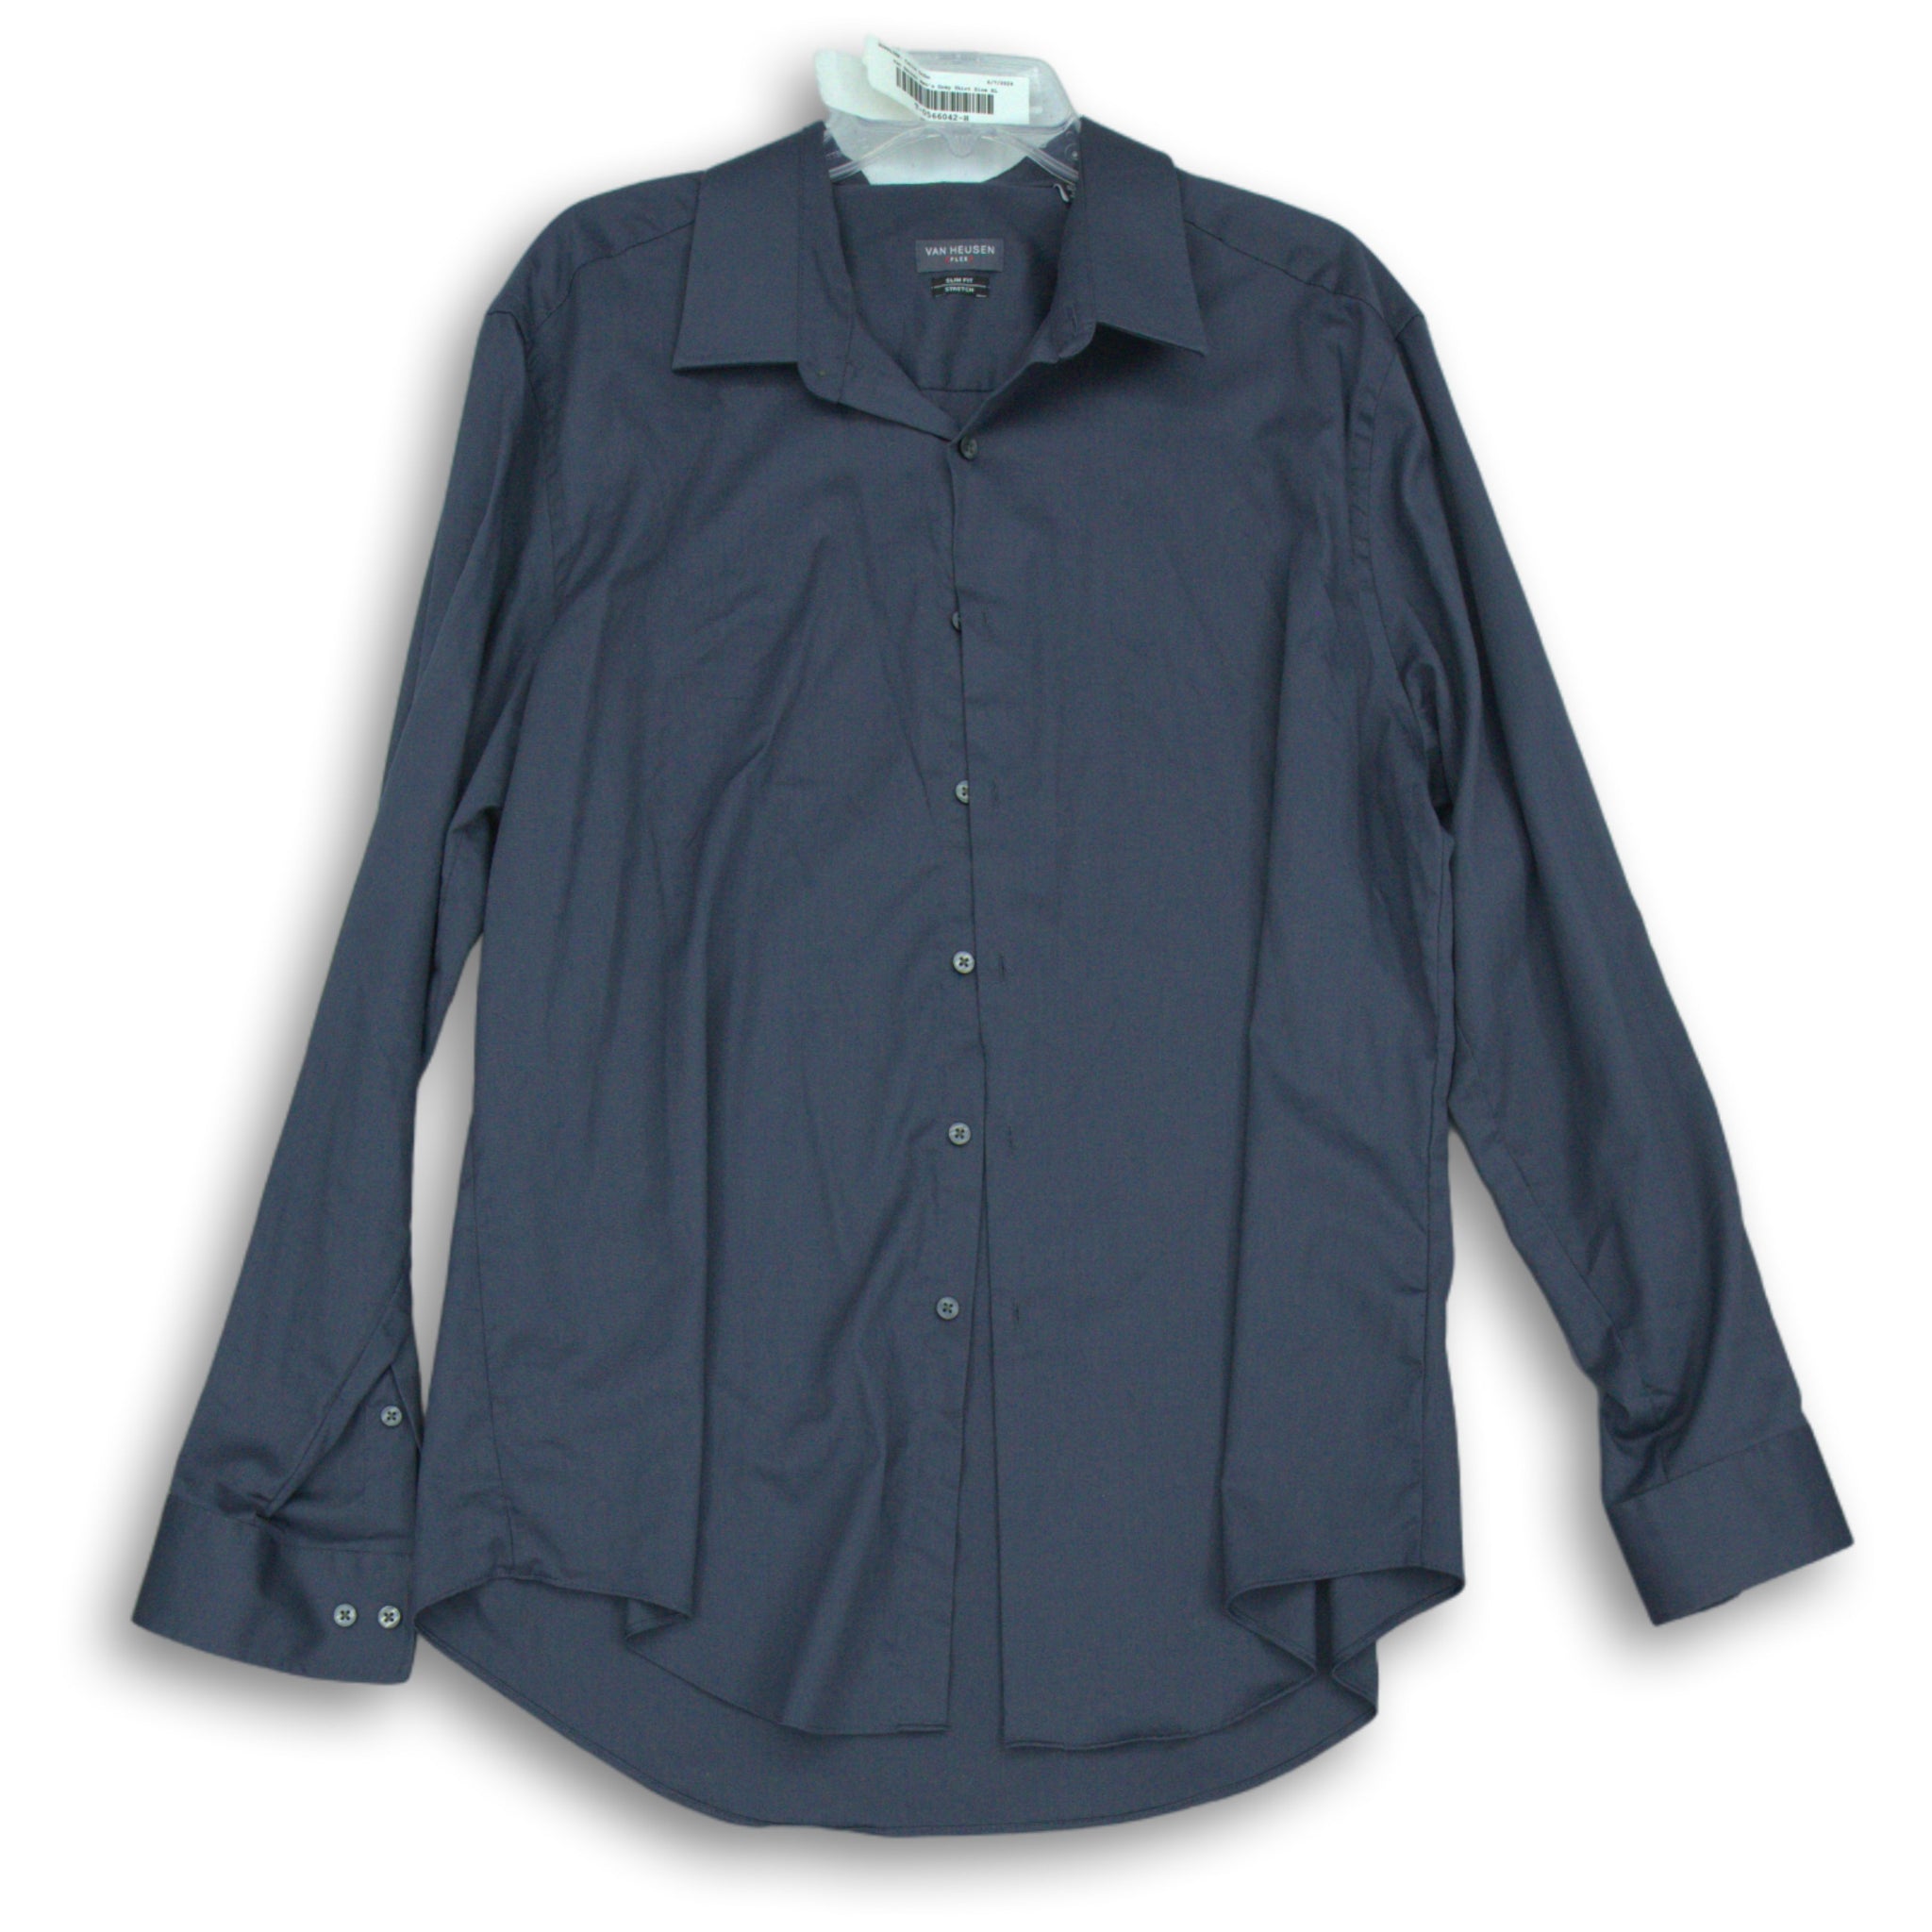 Van Heusen Mens Gray Shirt Size XL – The Goodwill Box